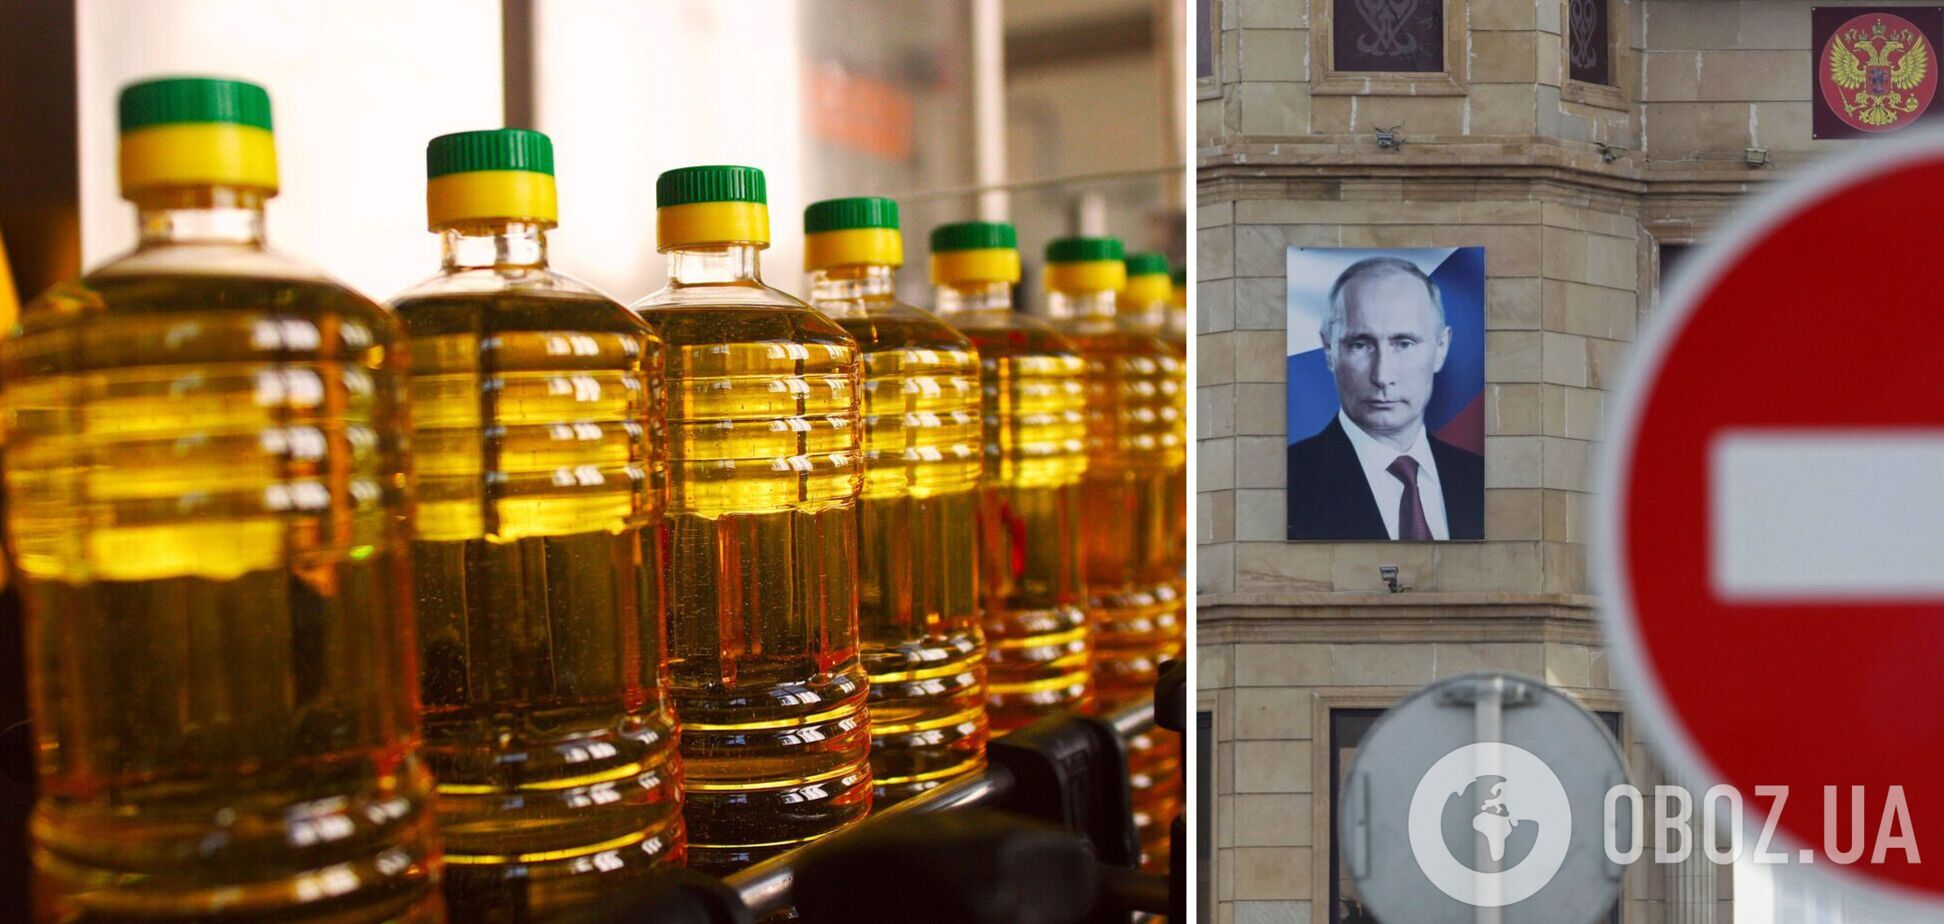 Через розв'язану Росією війну ціни на продовольство злетіли до рекордного рівня